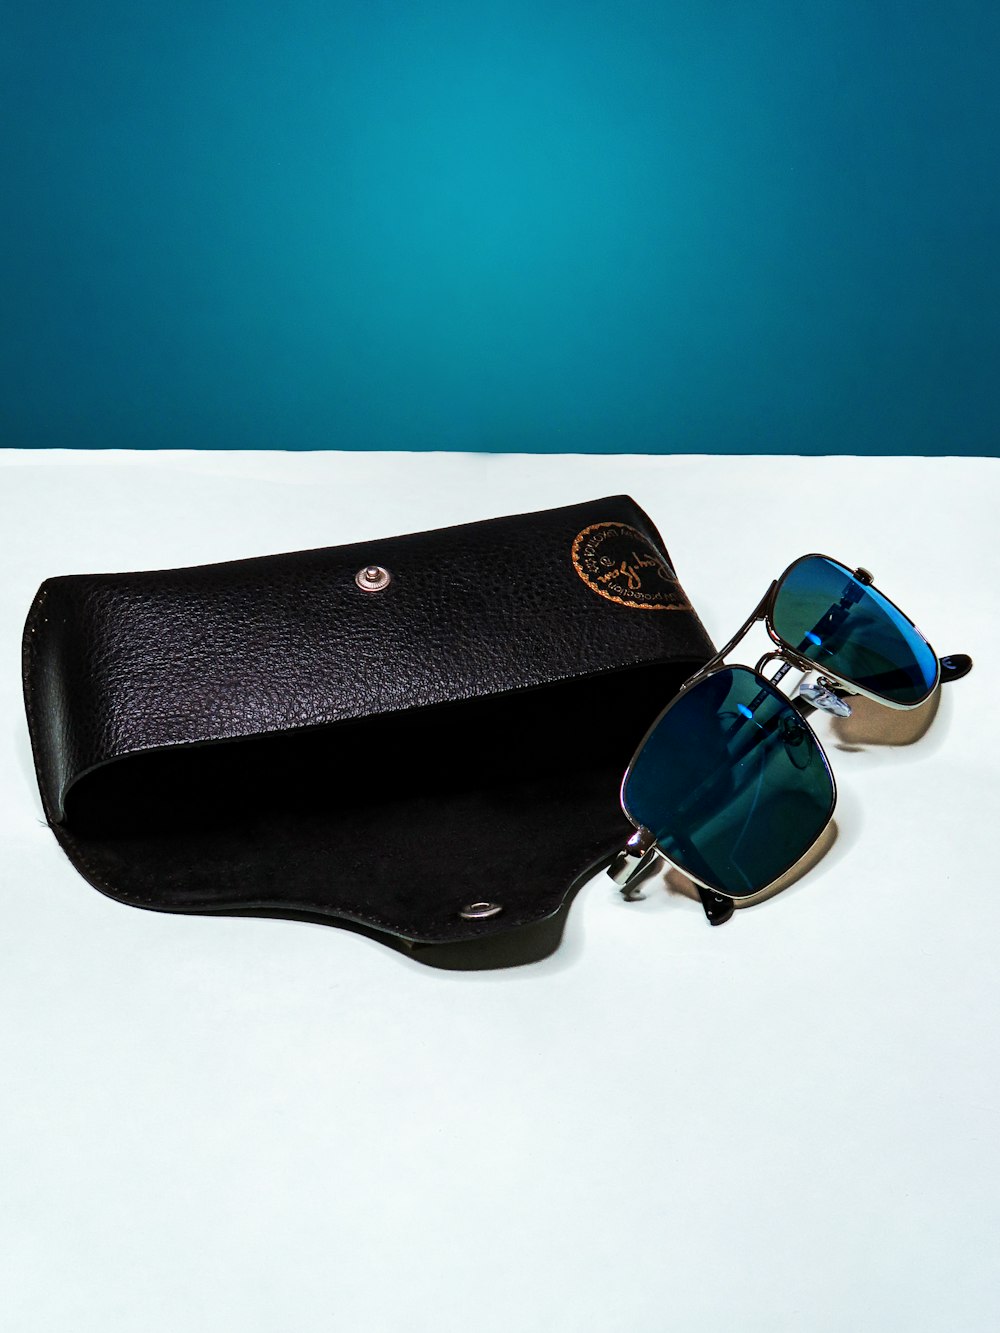 óculos de sol pretos na bolsa de couro preta